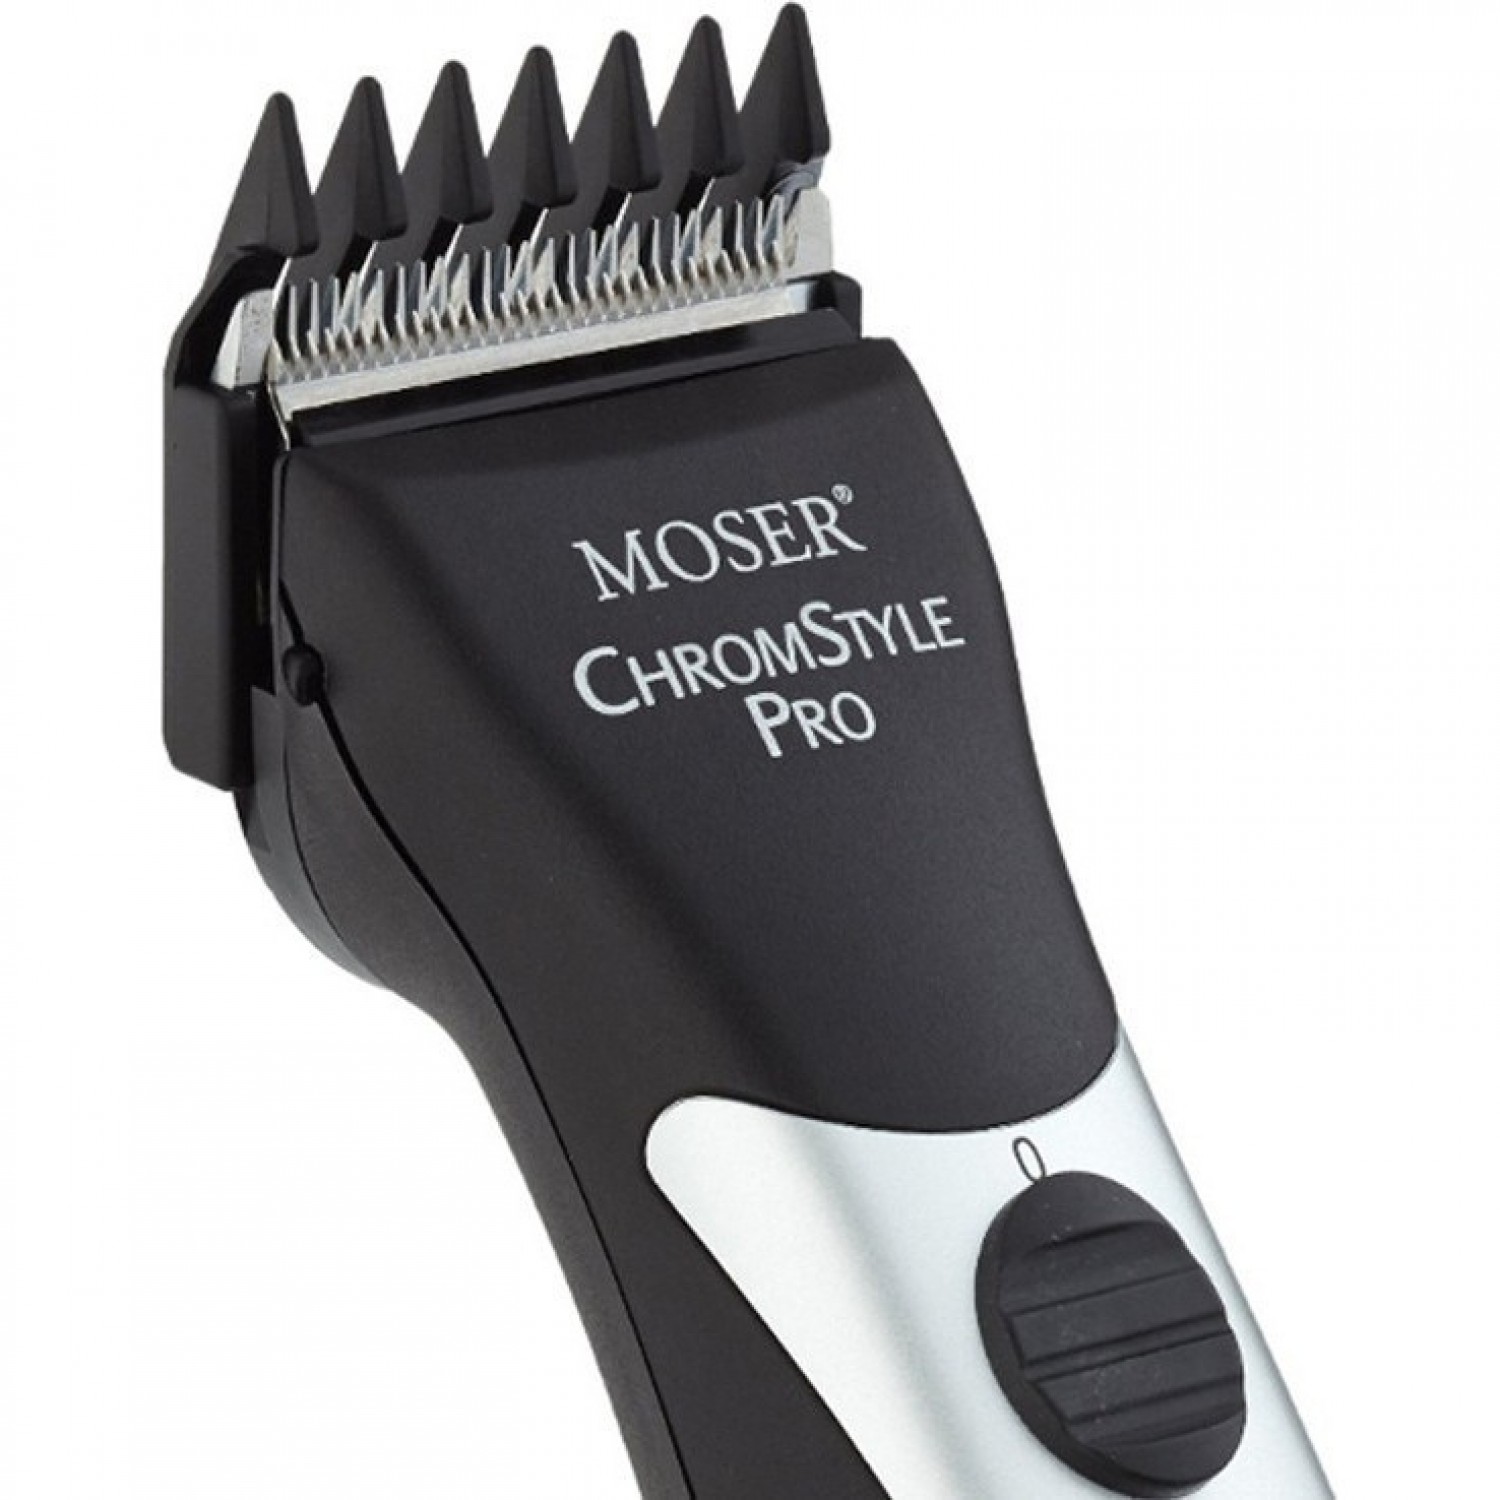 MOSER ChromStyle PRO чёрный 1871-0081. Купить Машинка для стрижки волос на  Официальном Сайте MOSER в России.